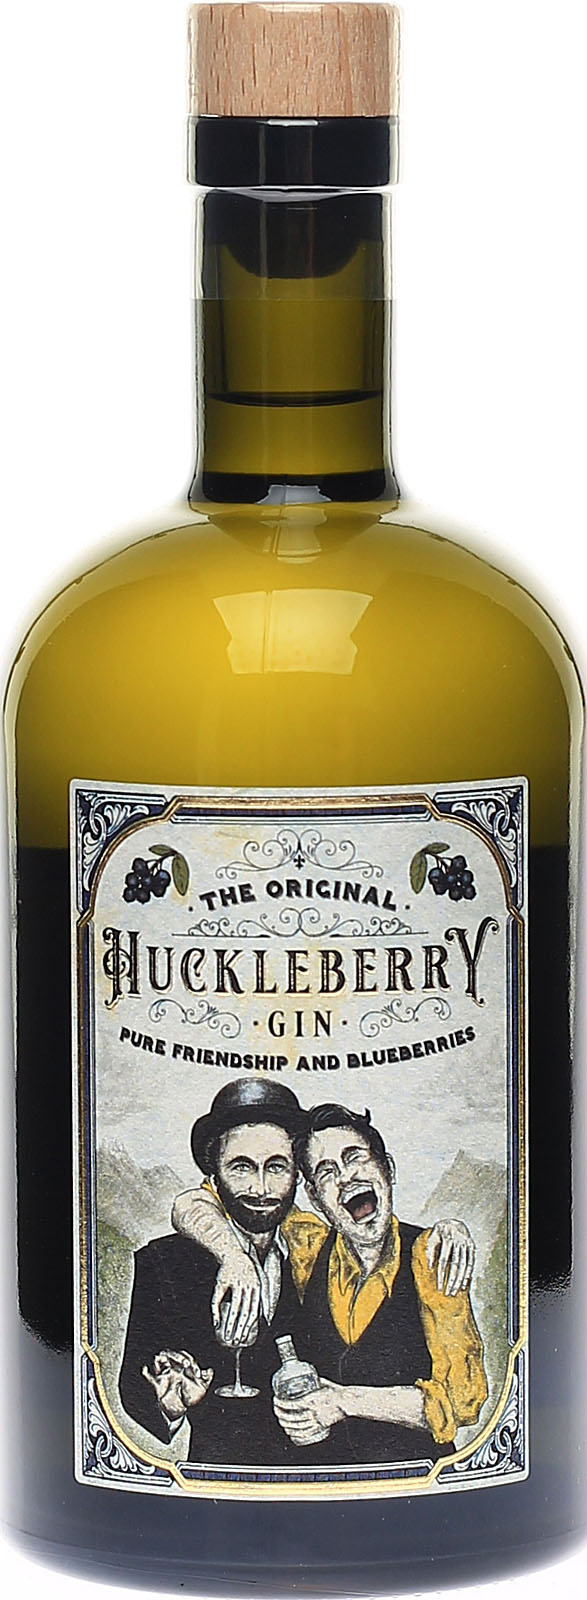 mit intensivem Gin, deutscher Huckleberry Heidelbee Gin